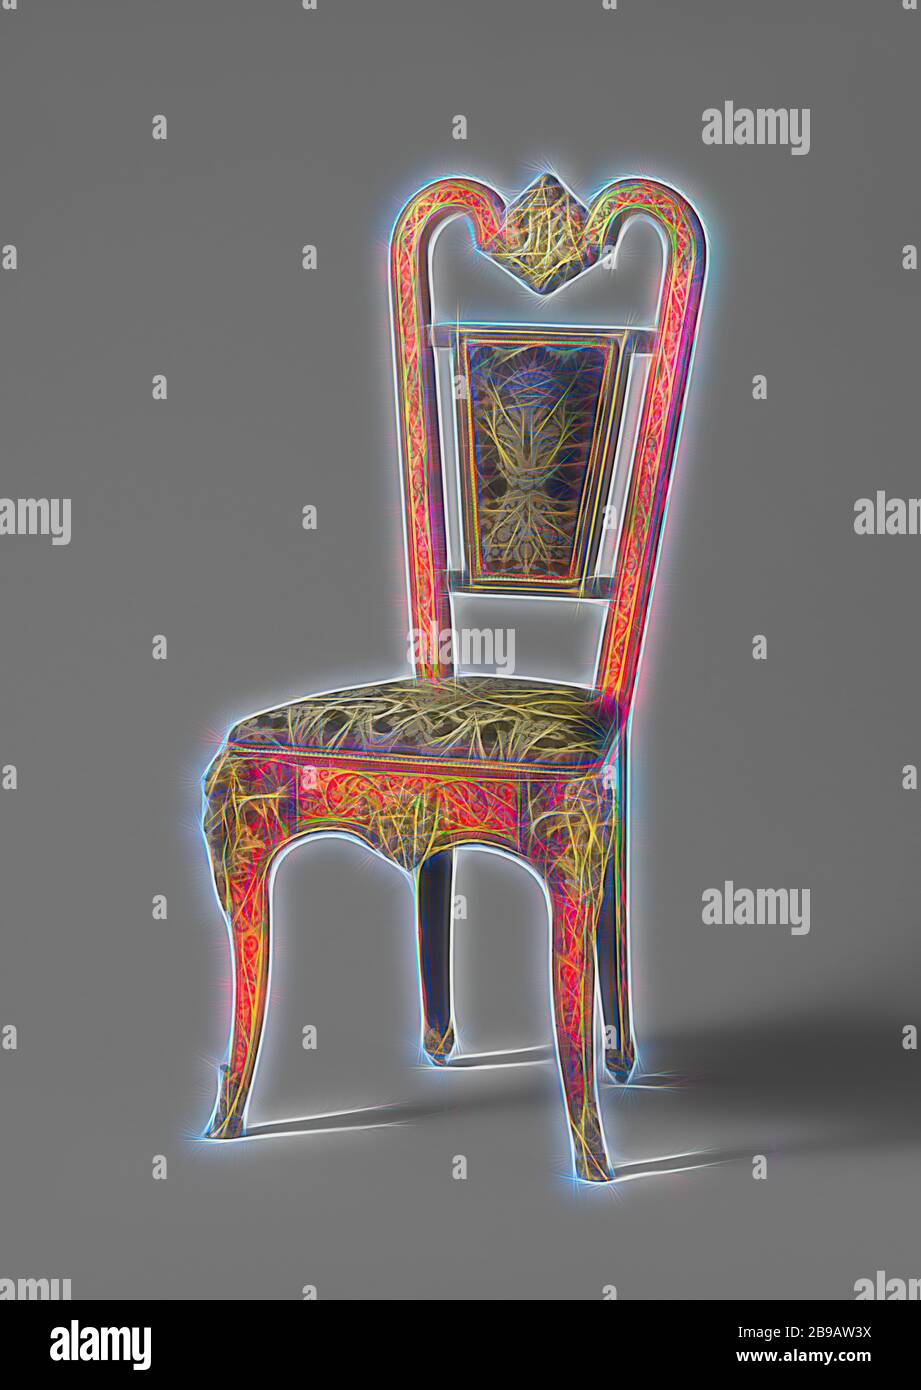 Chaise de placage ébène avec marqueterie Boulle, chaise de placage ébène avec marqueterie Boulle. La chaise est estampillée W., anonyme, 1800 - 1900, ébène (bois), bois (matériel végétal), laiton (alliage), dorure (matériau), soie, dorure, h 112 cm × l 52 cm × d 41 cm, repensé par Gibon, conception de lumière chaude et gaie rayonnant de la luminosité et de rayons de lumière radiance. L'art classique réinventé avec une touche moderne. Photographie inspirée par le futurisme, embrassant l'énergie dynamique de la technologie moderne, le mouvement, la vitesse et révolutionnez la culture. Banque D'Images